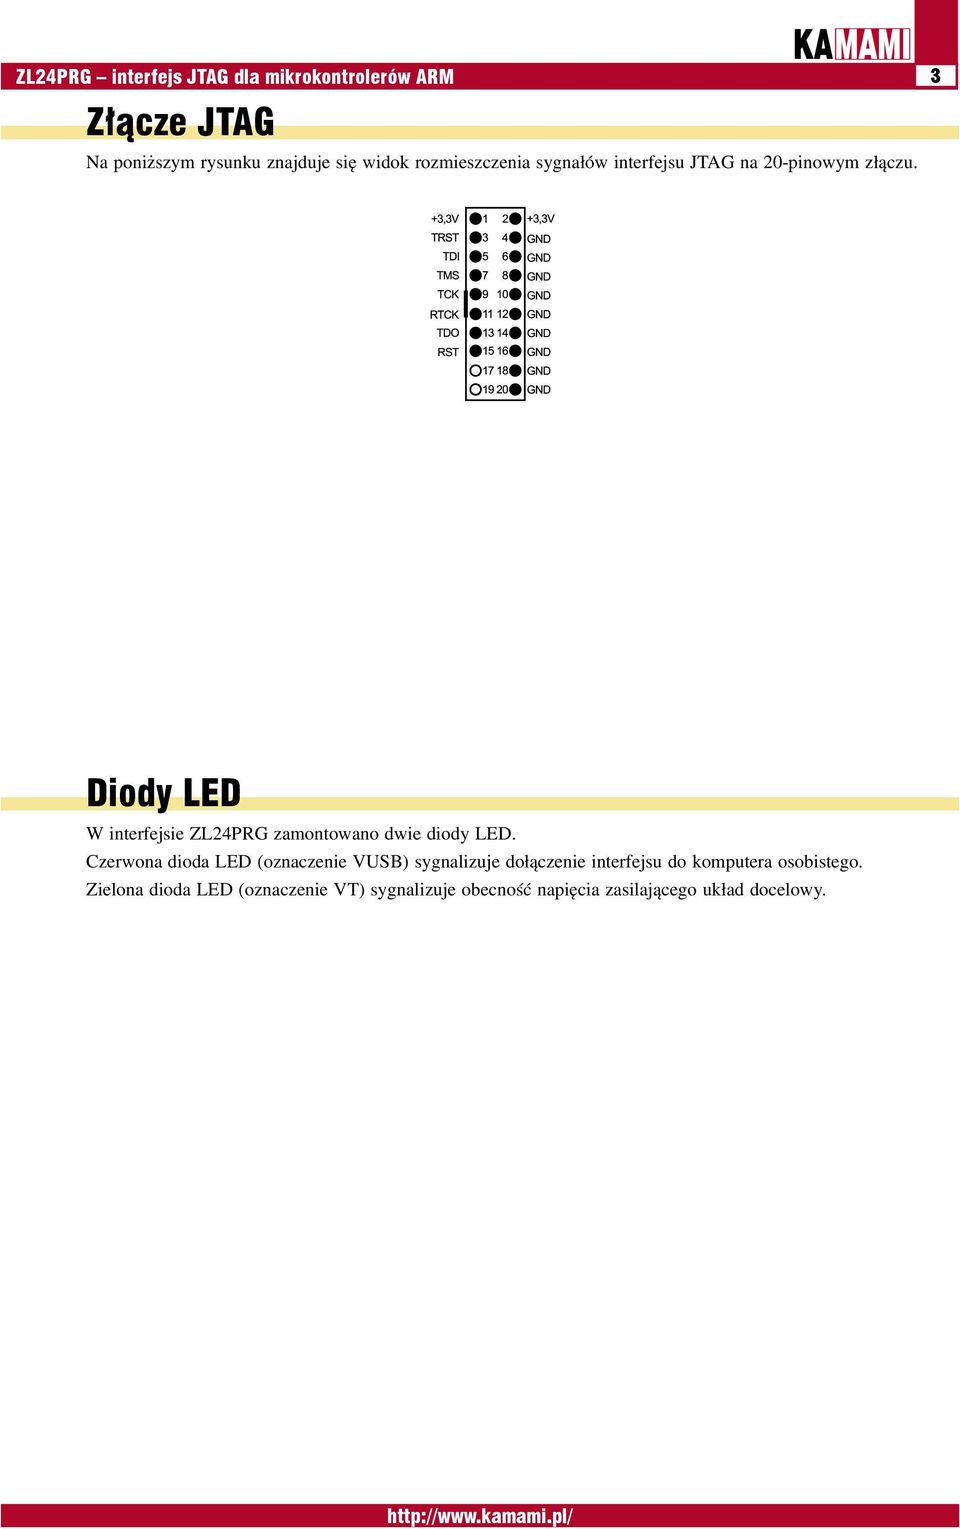 Diody LED W interfejsie ZL24PRG zamontowano dwie diody LED.